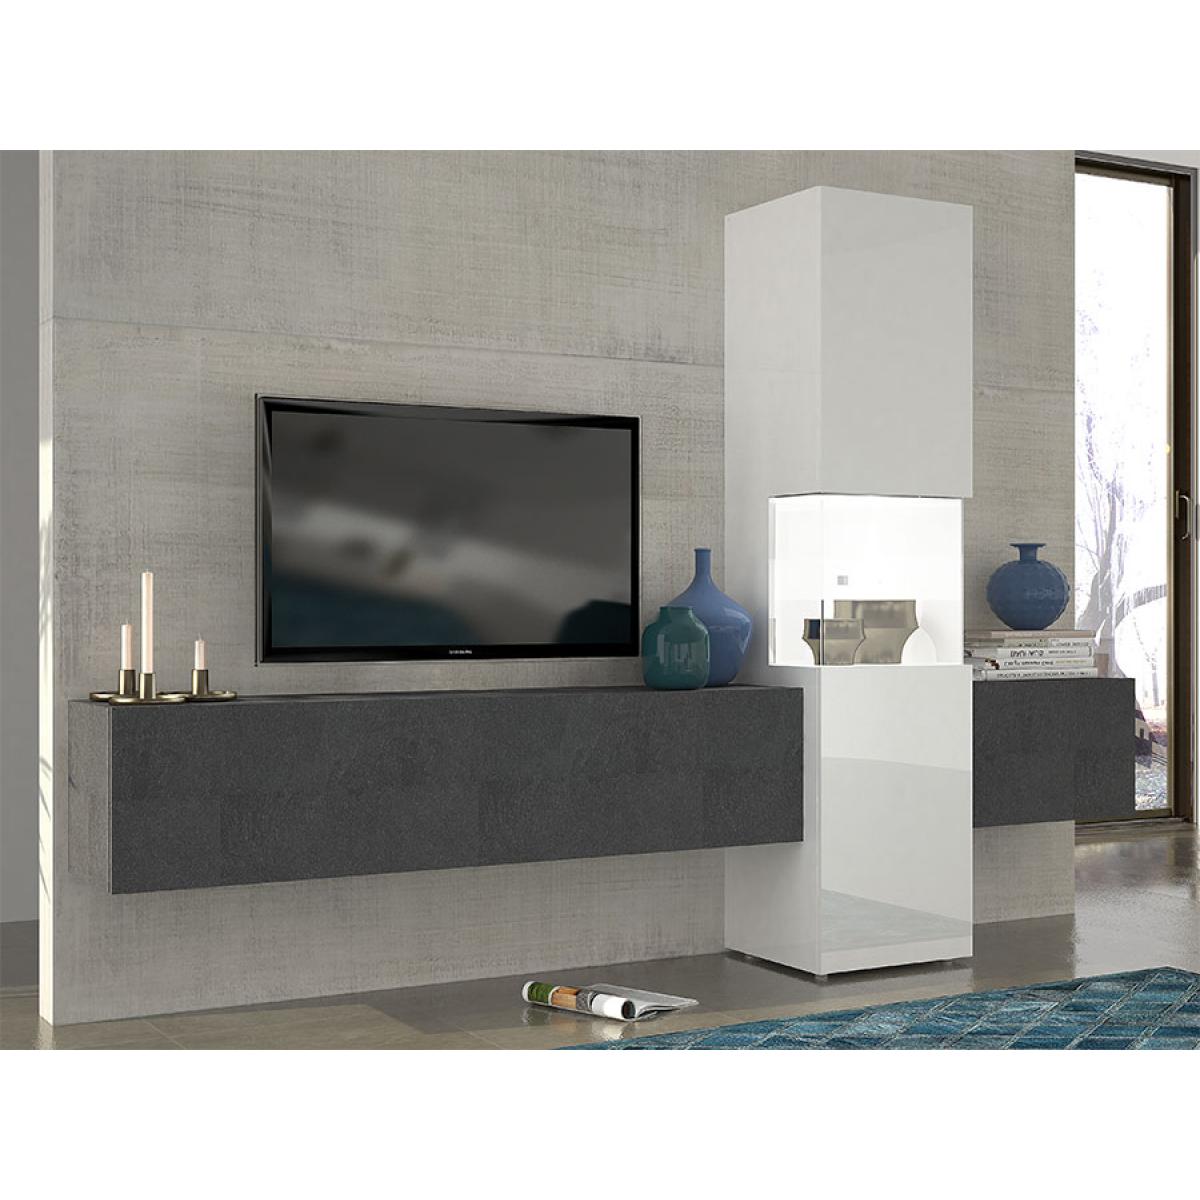 Kasalinea - Ensemble meuble TV effet marbré et blanc laqué design ZACH avec éclairage - Meubles TV, Hi-Fi